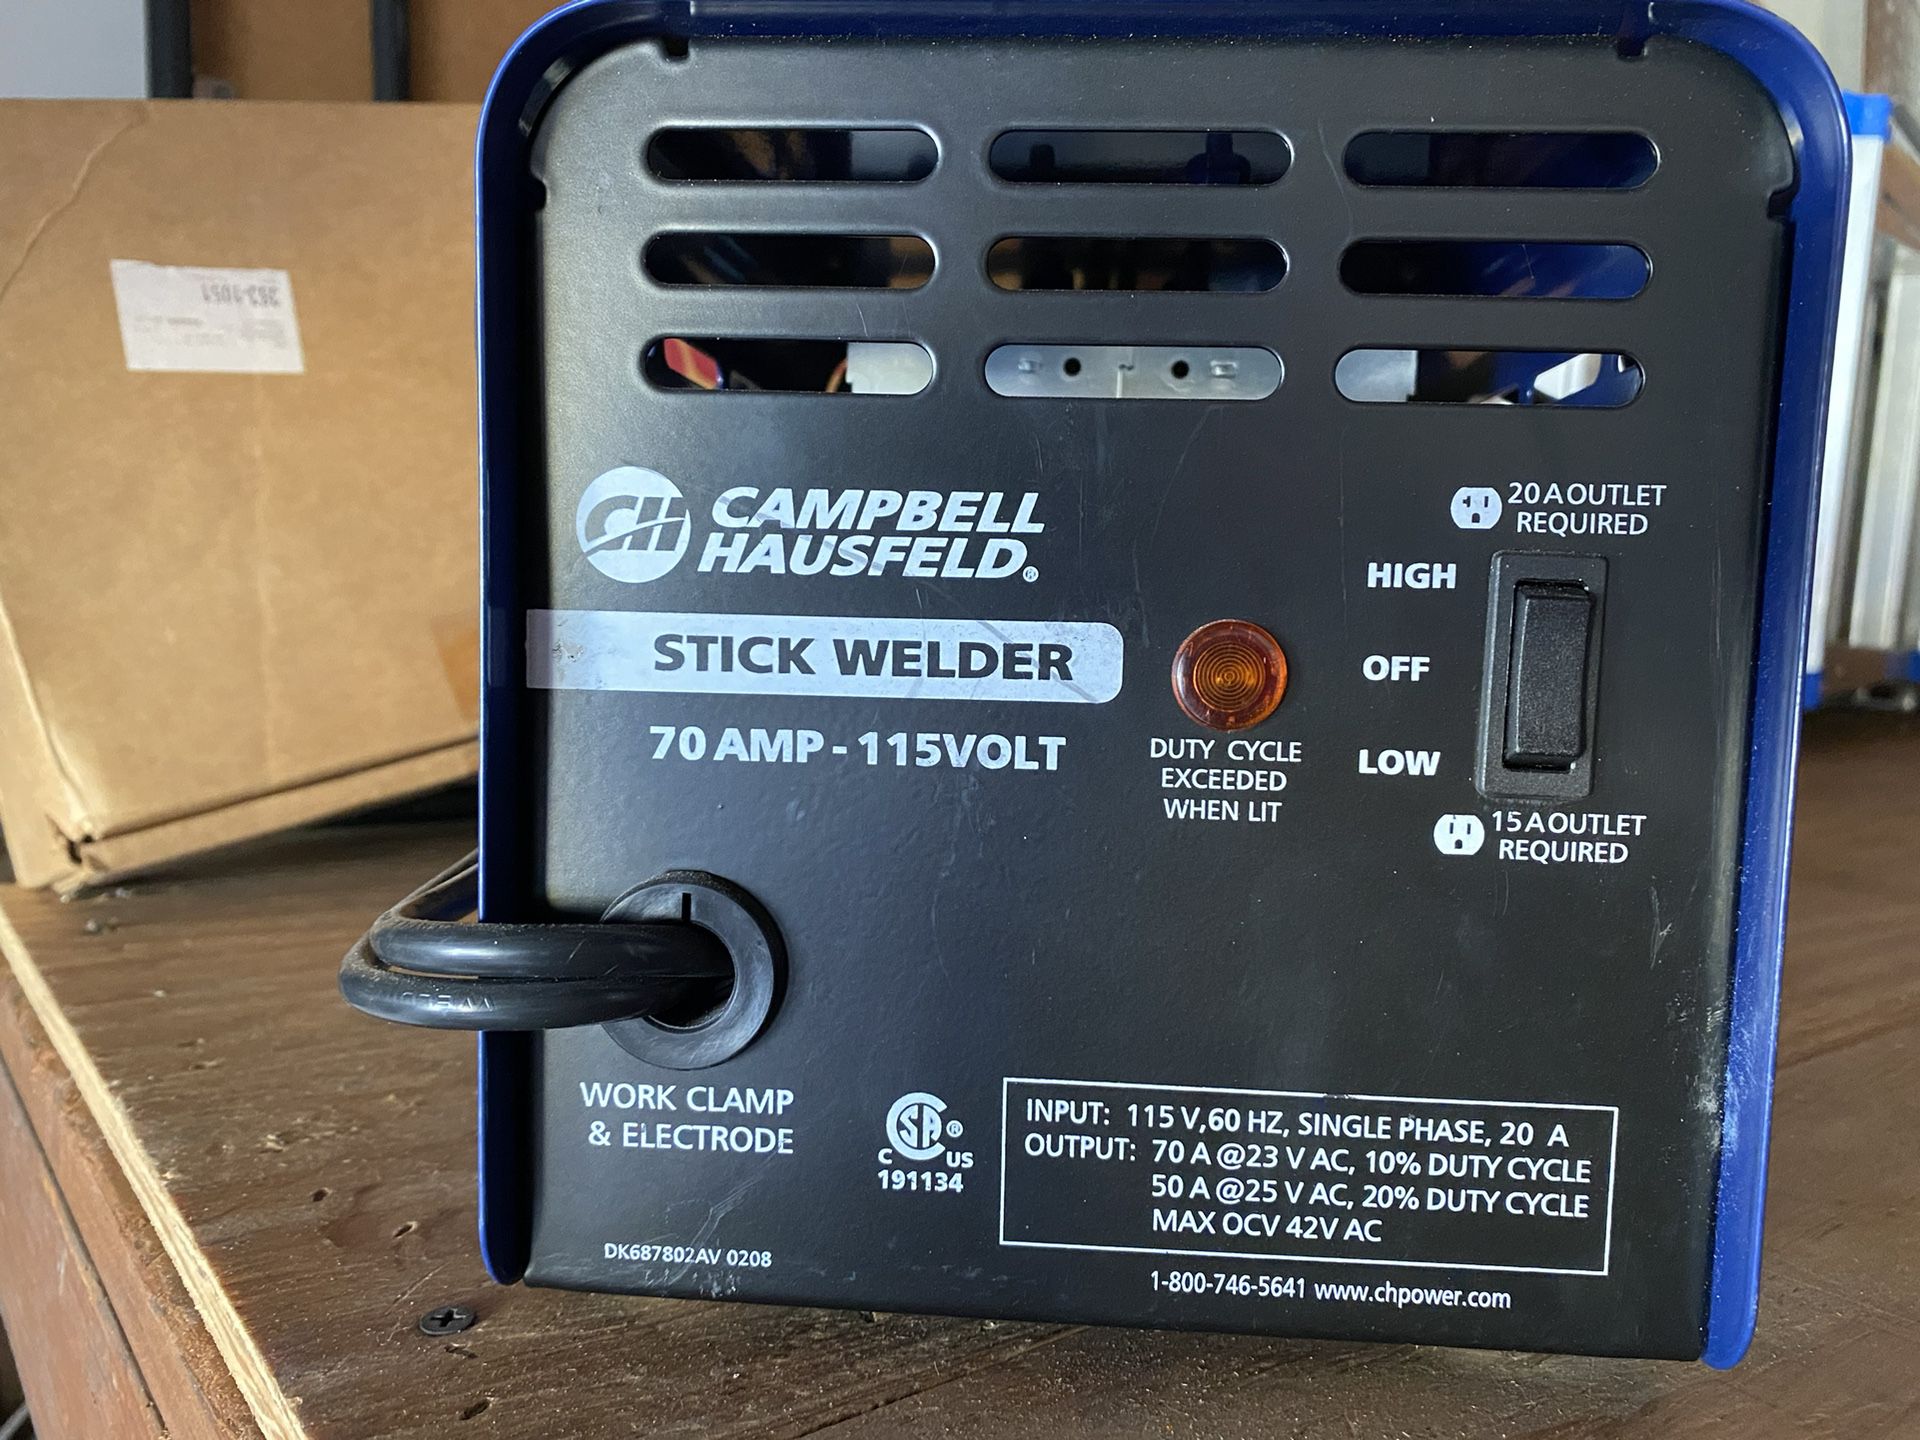 Campbell Hausefeld. Stick Welder 70 Amps 115V